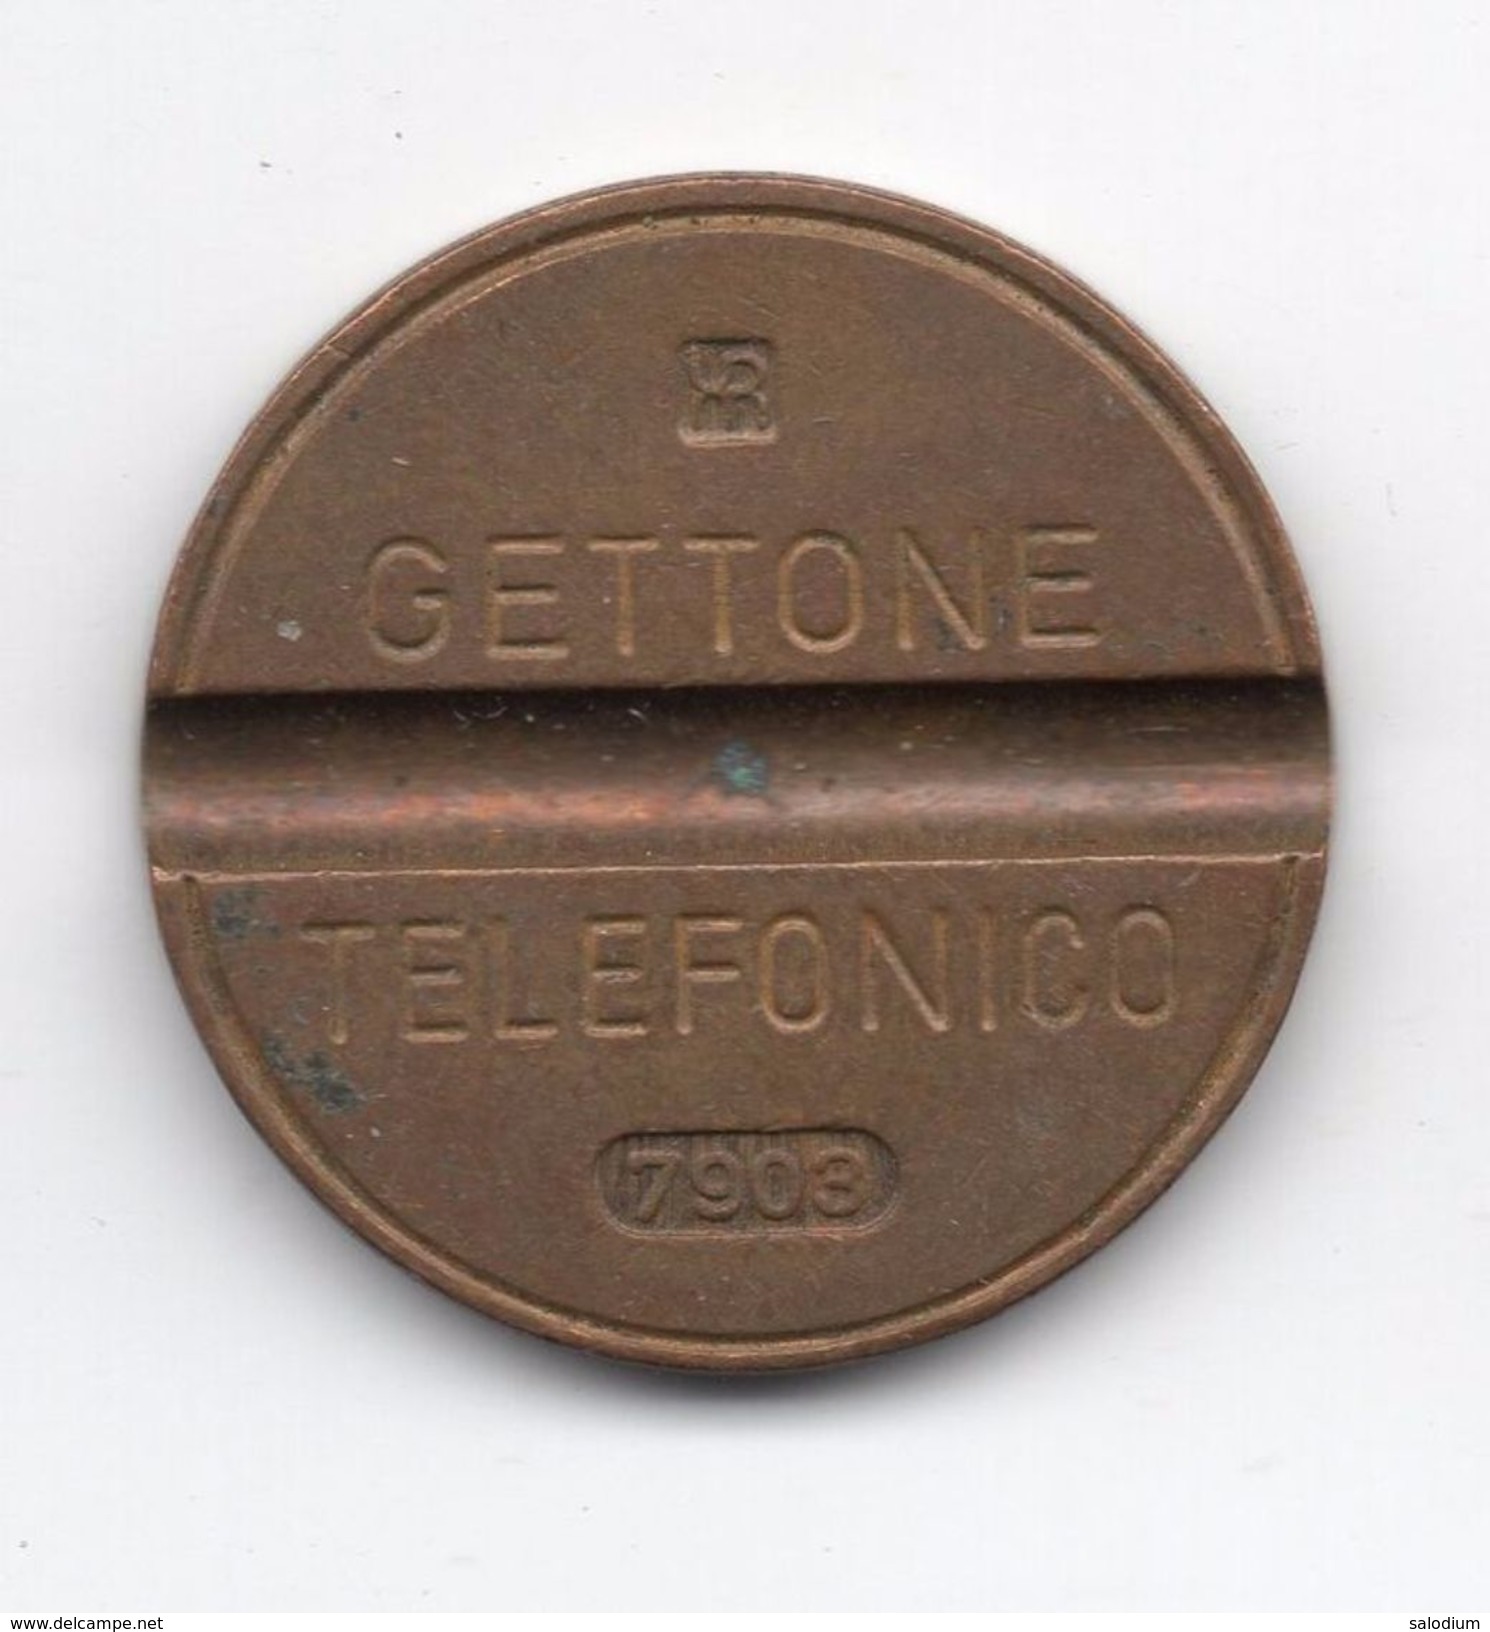 Gettone Telefonico 7903 Token Telephone - (Id-625) - Professionnels/De Société